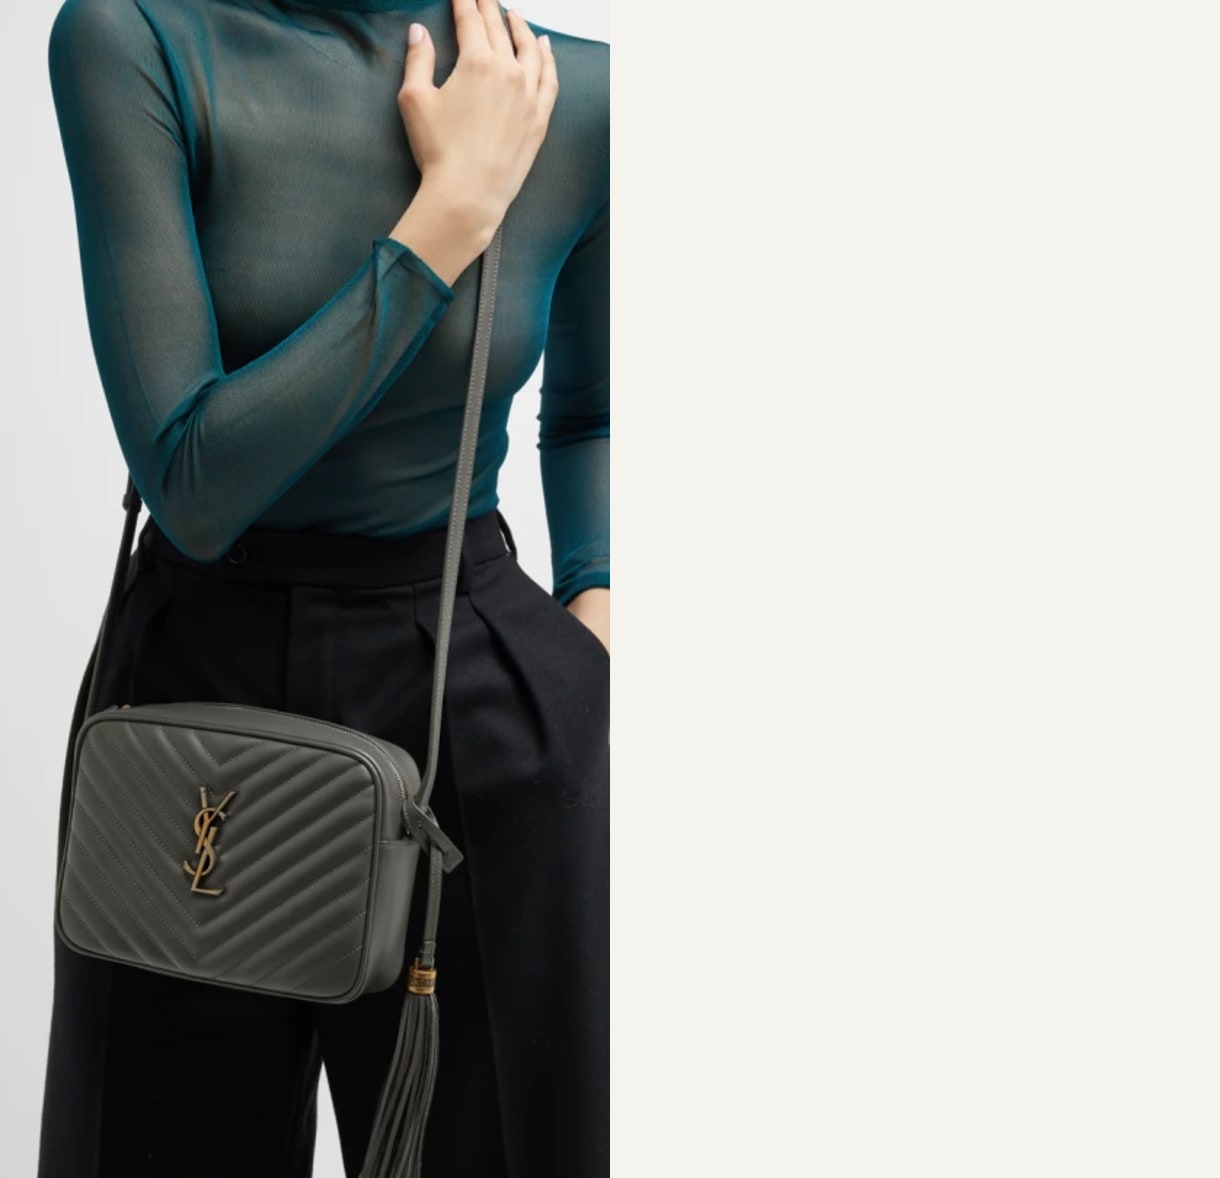 Sh2439 Inspired Luxury Mini Crossbody Designer Bags Women Famous